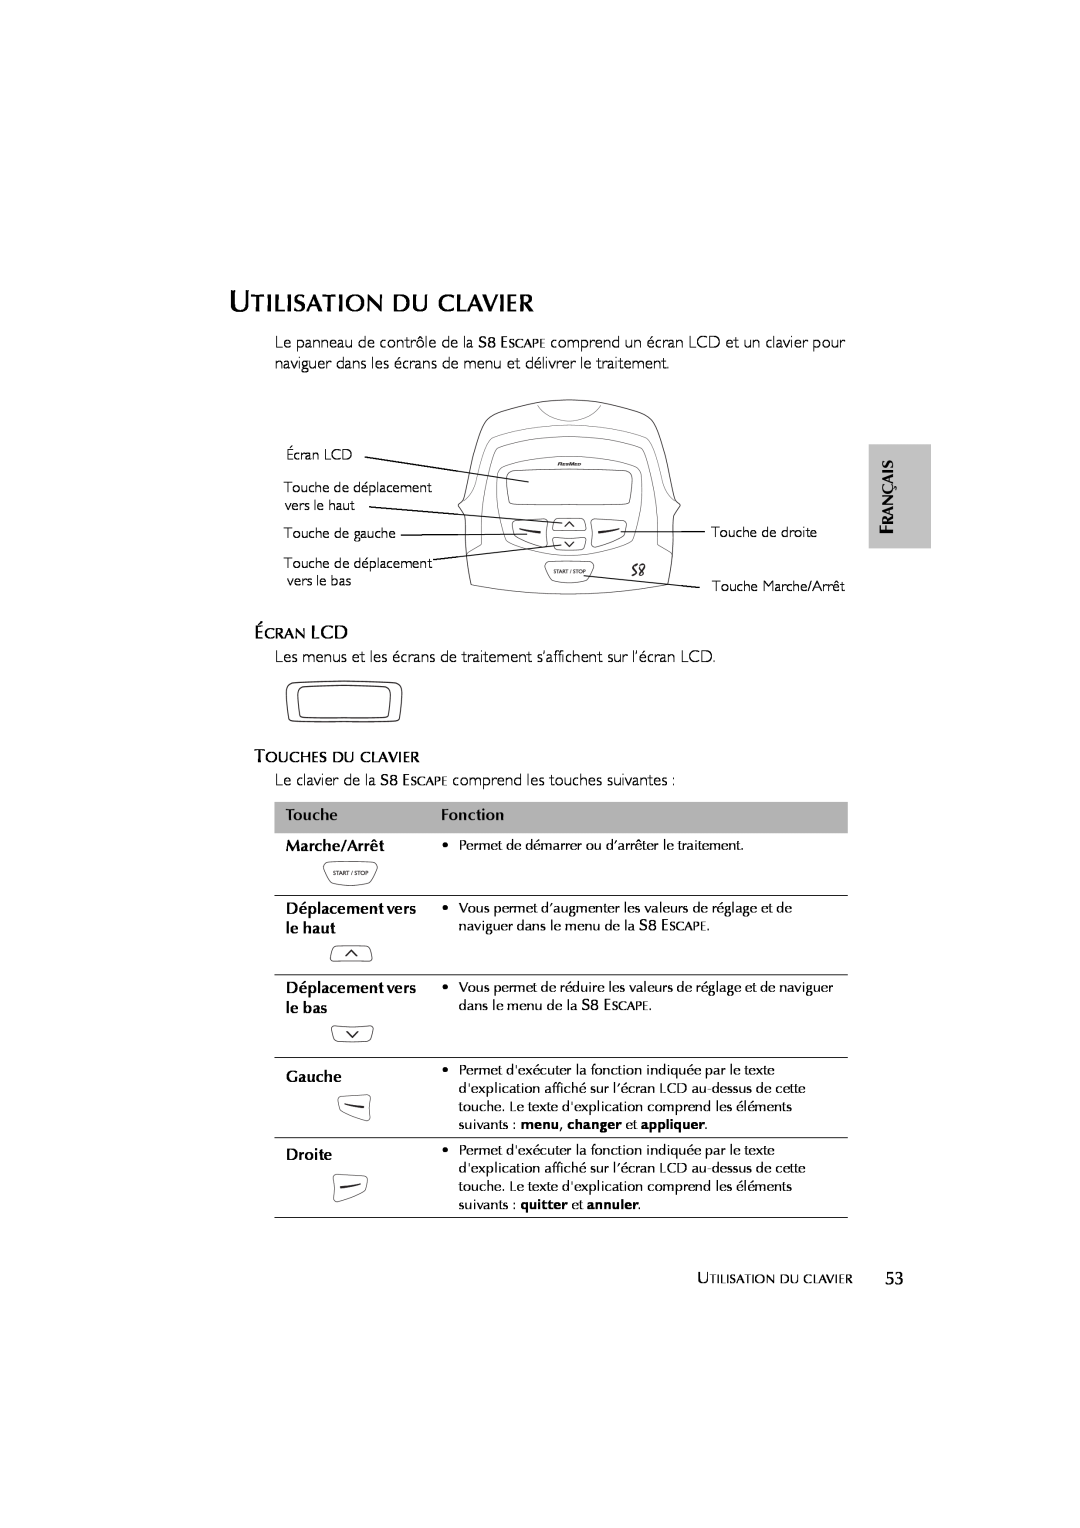 ResMed s8 user manual Utilisation Du Clavier 